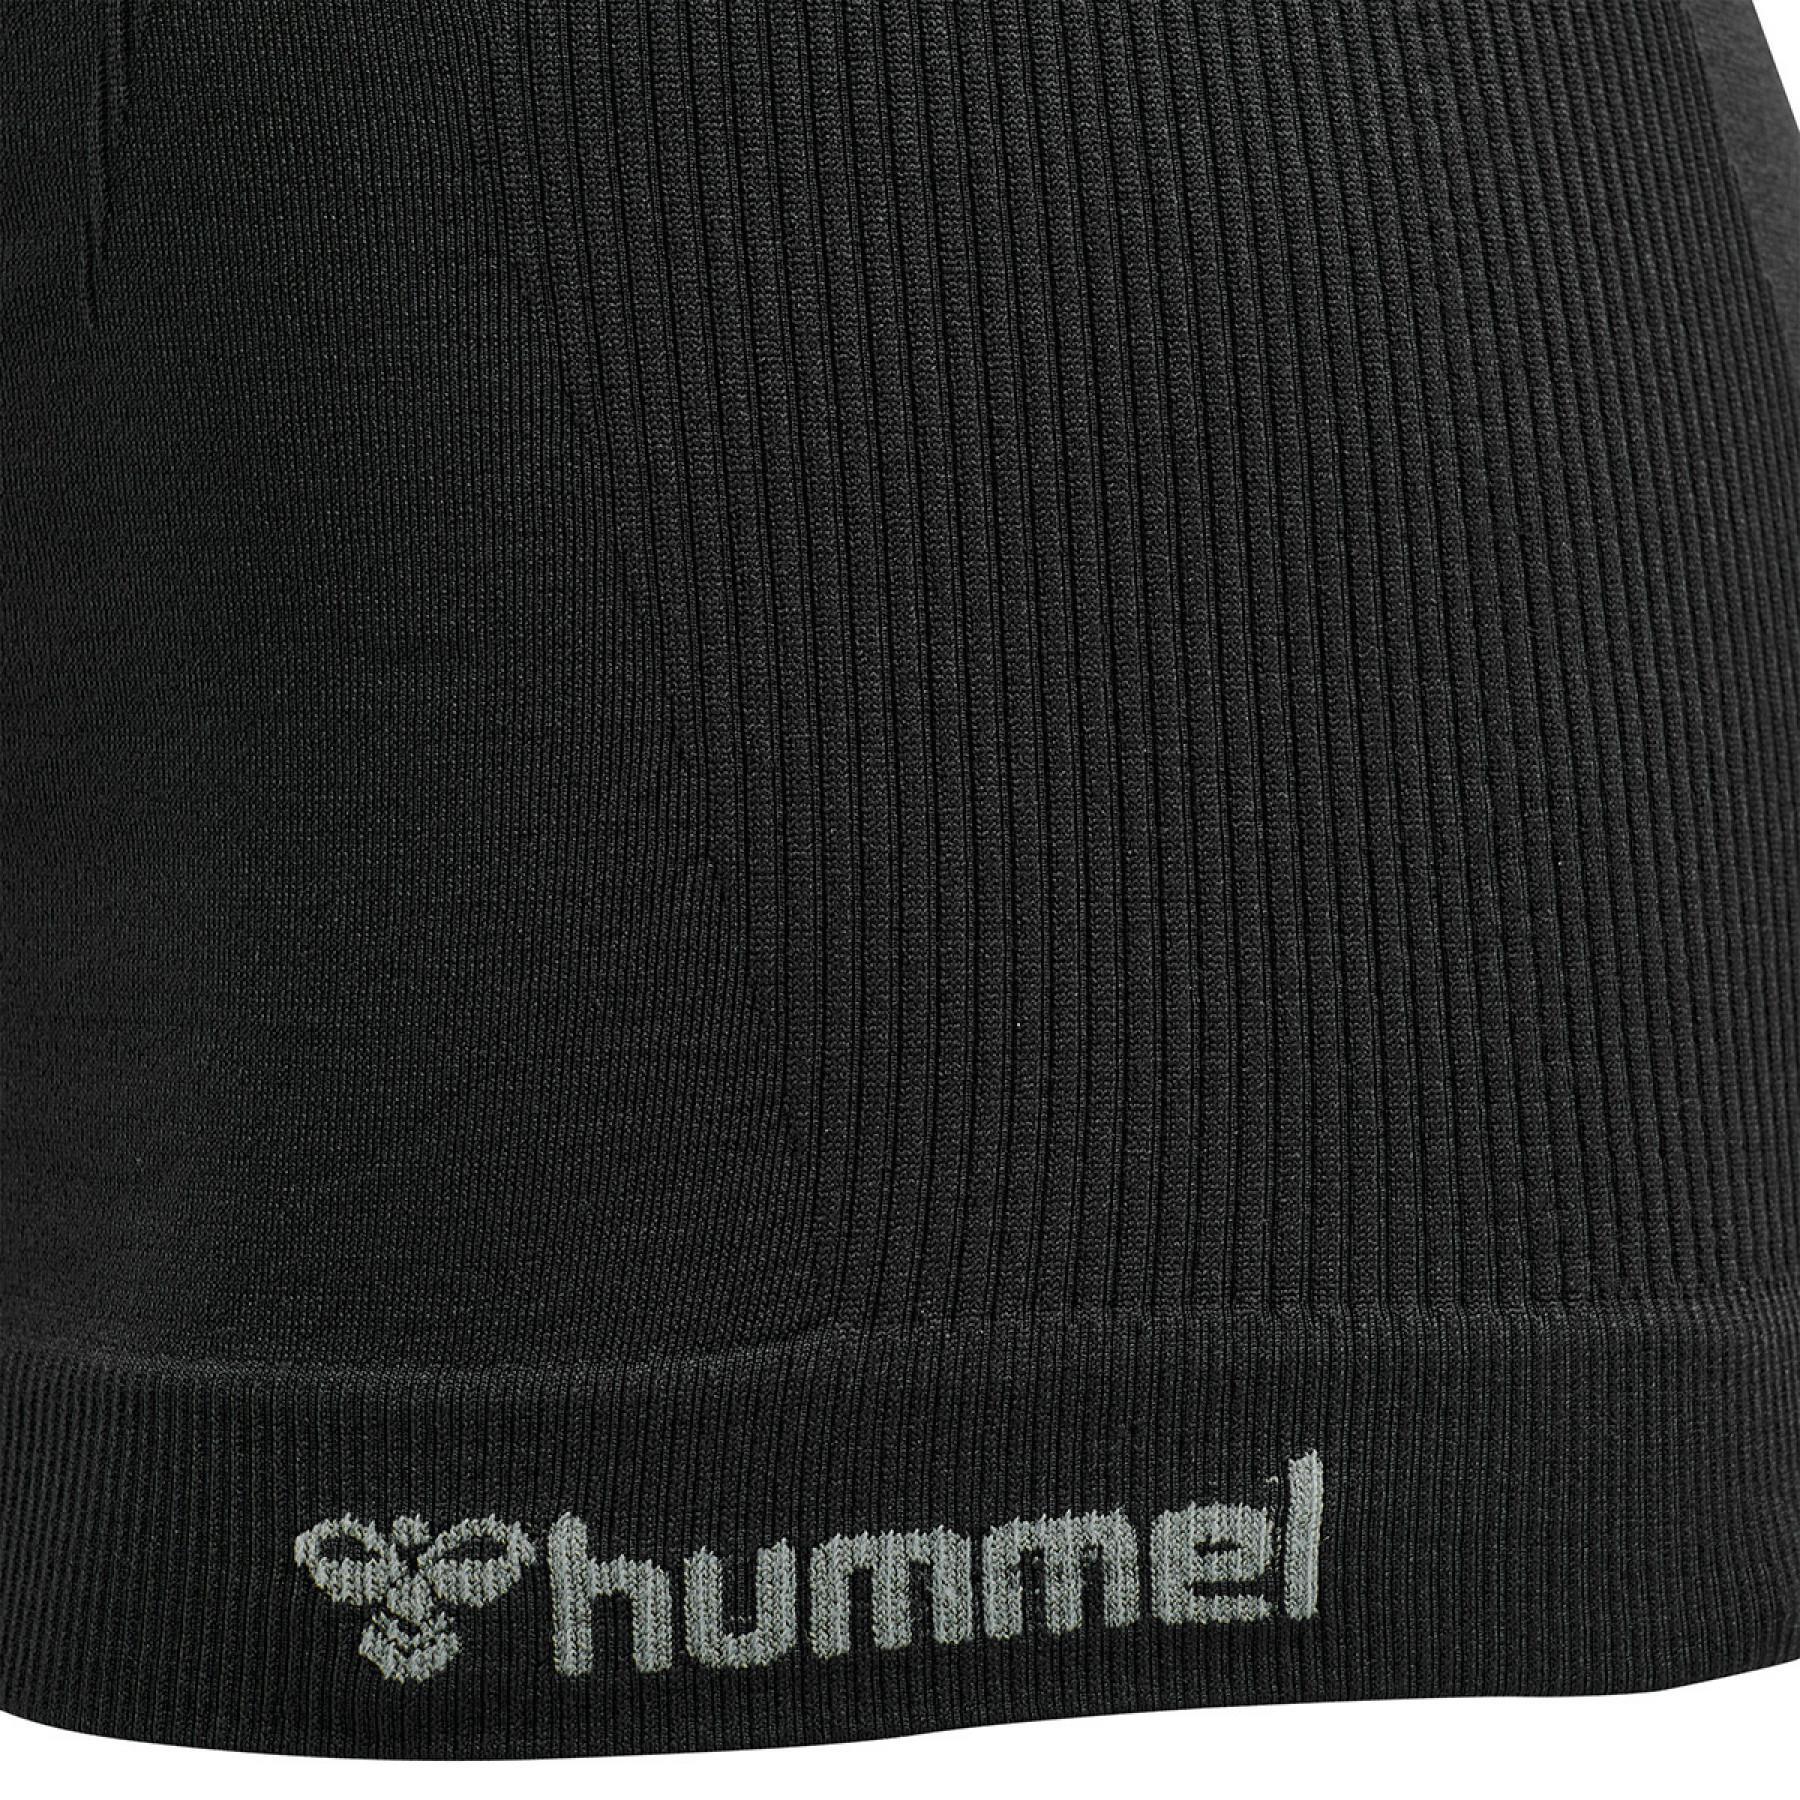 Women's tank top Hummel hmltif top - Hummel - Brands - Mindarie-wa